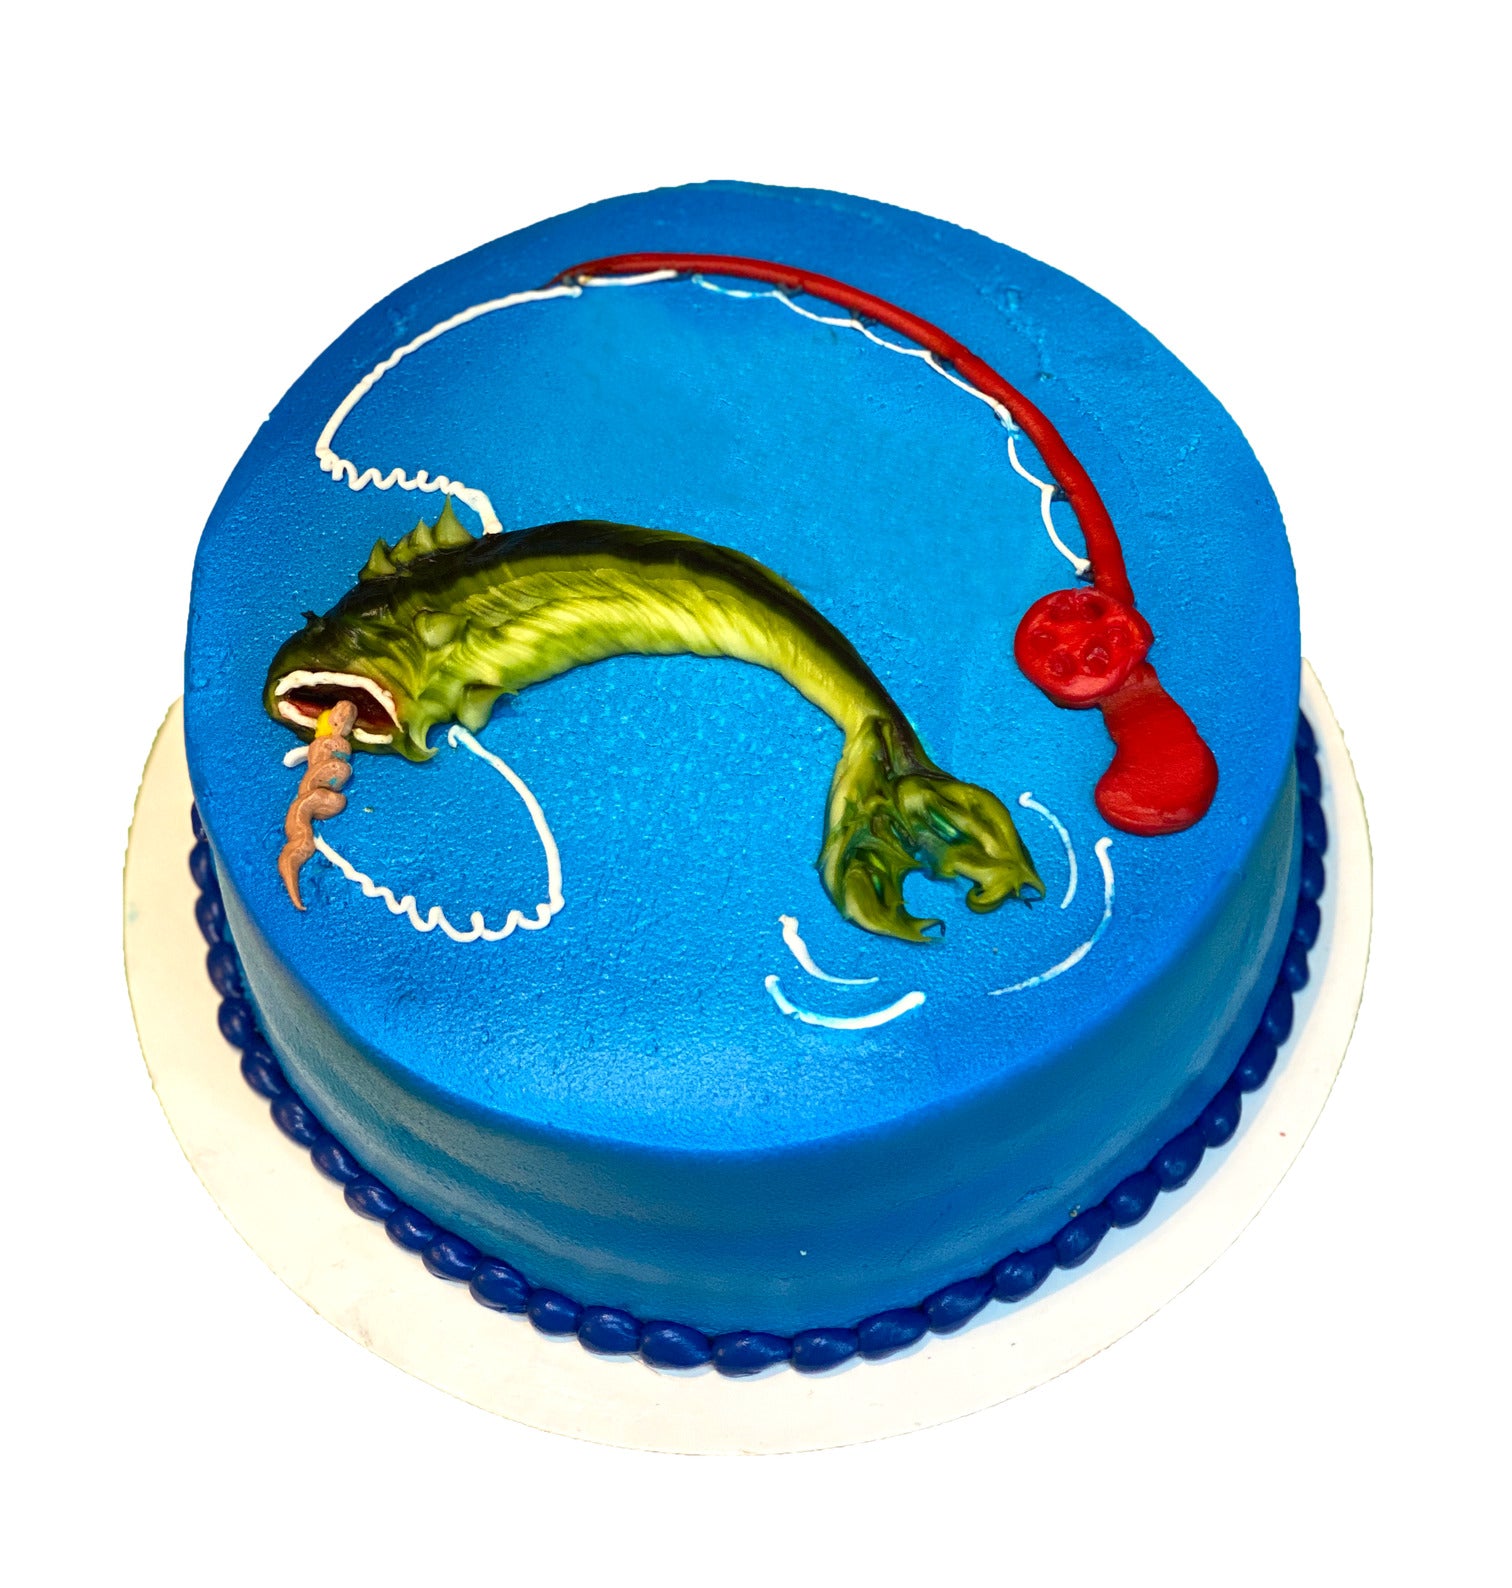 Fishing Cake Design Images (Fishing Birthday Cake Ideas)